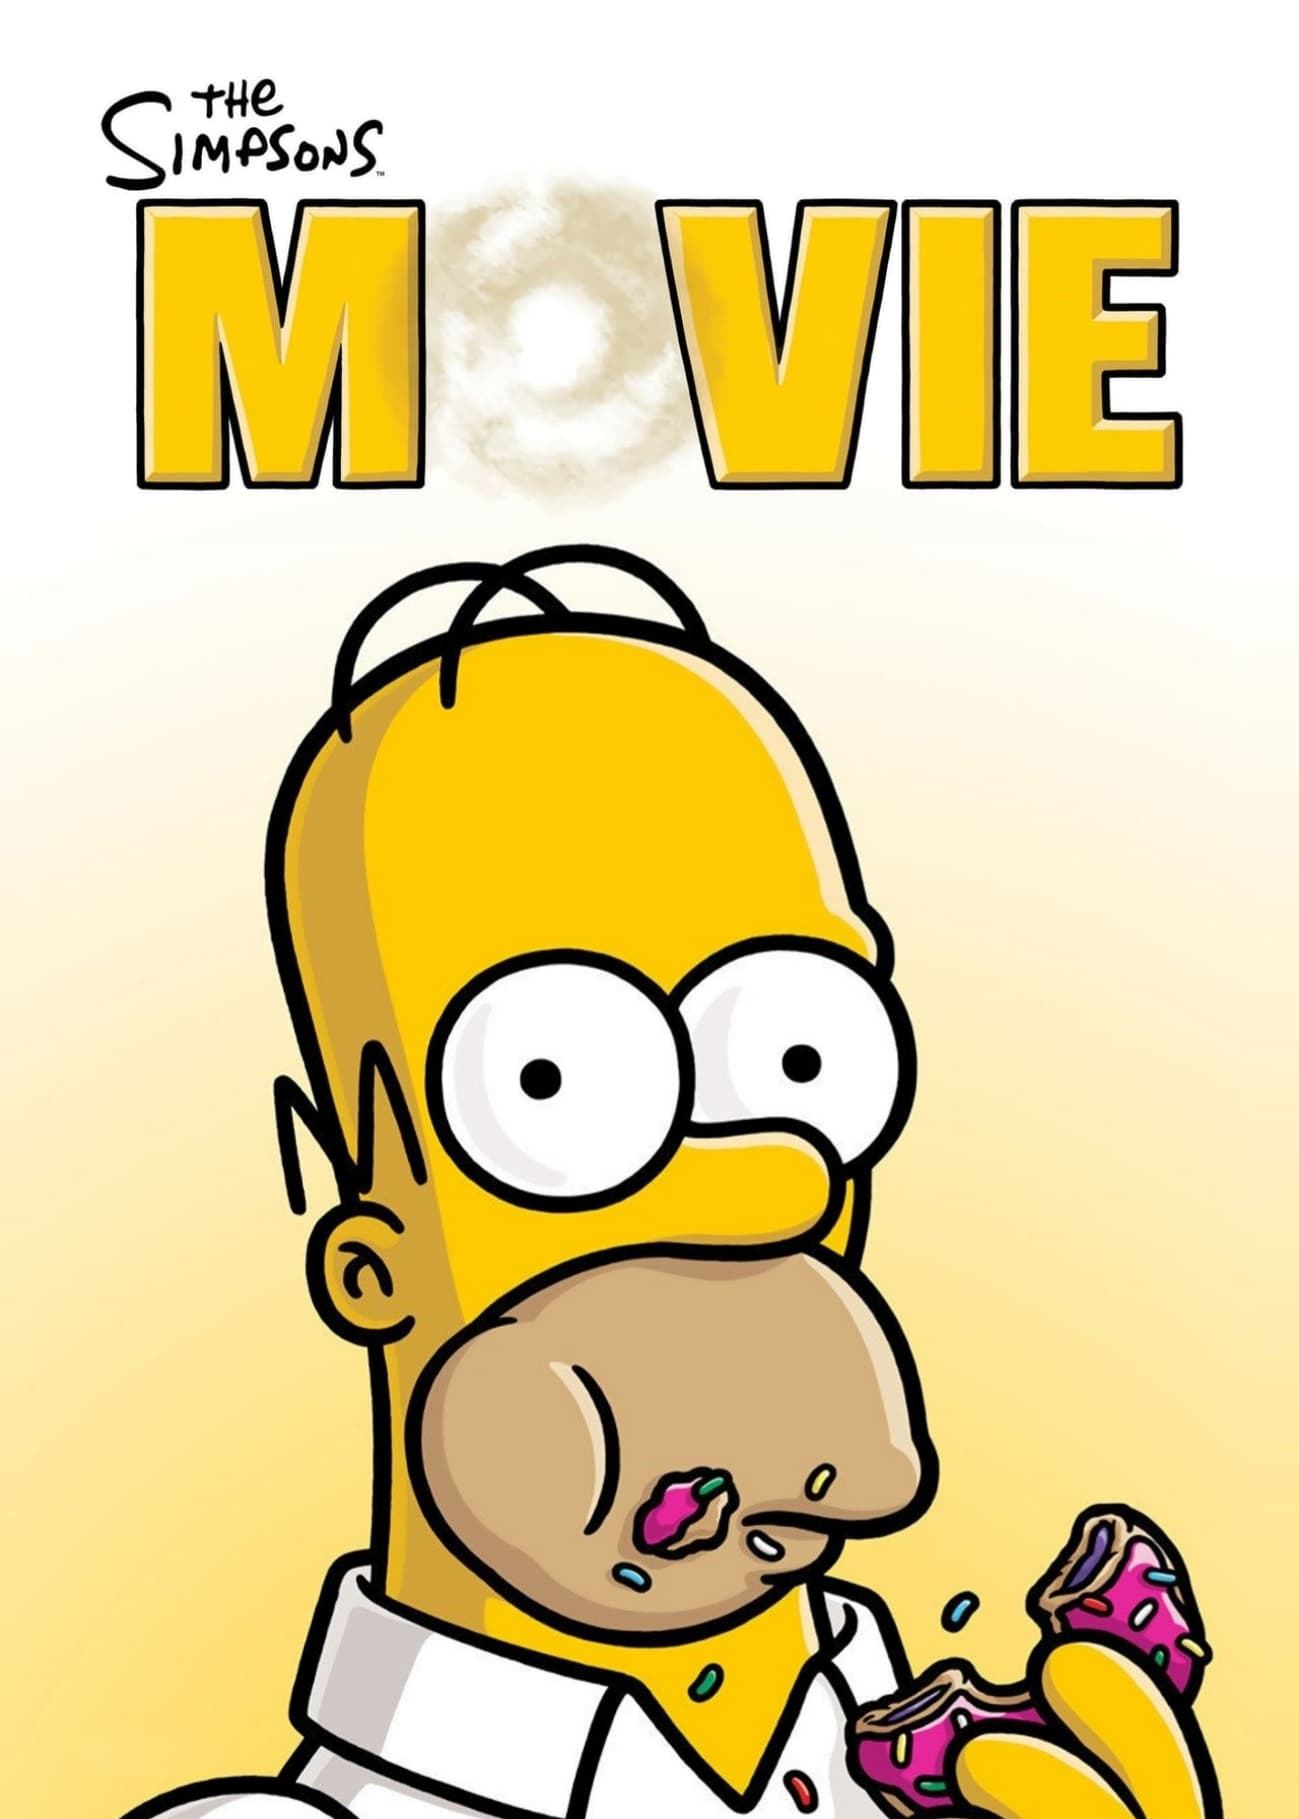 The Simpsons Movie (The Simpsons Movie) [2007]